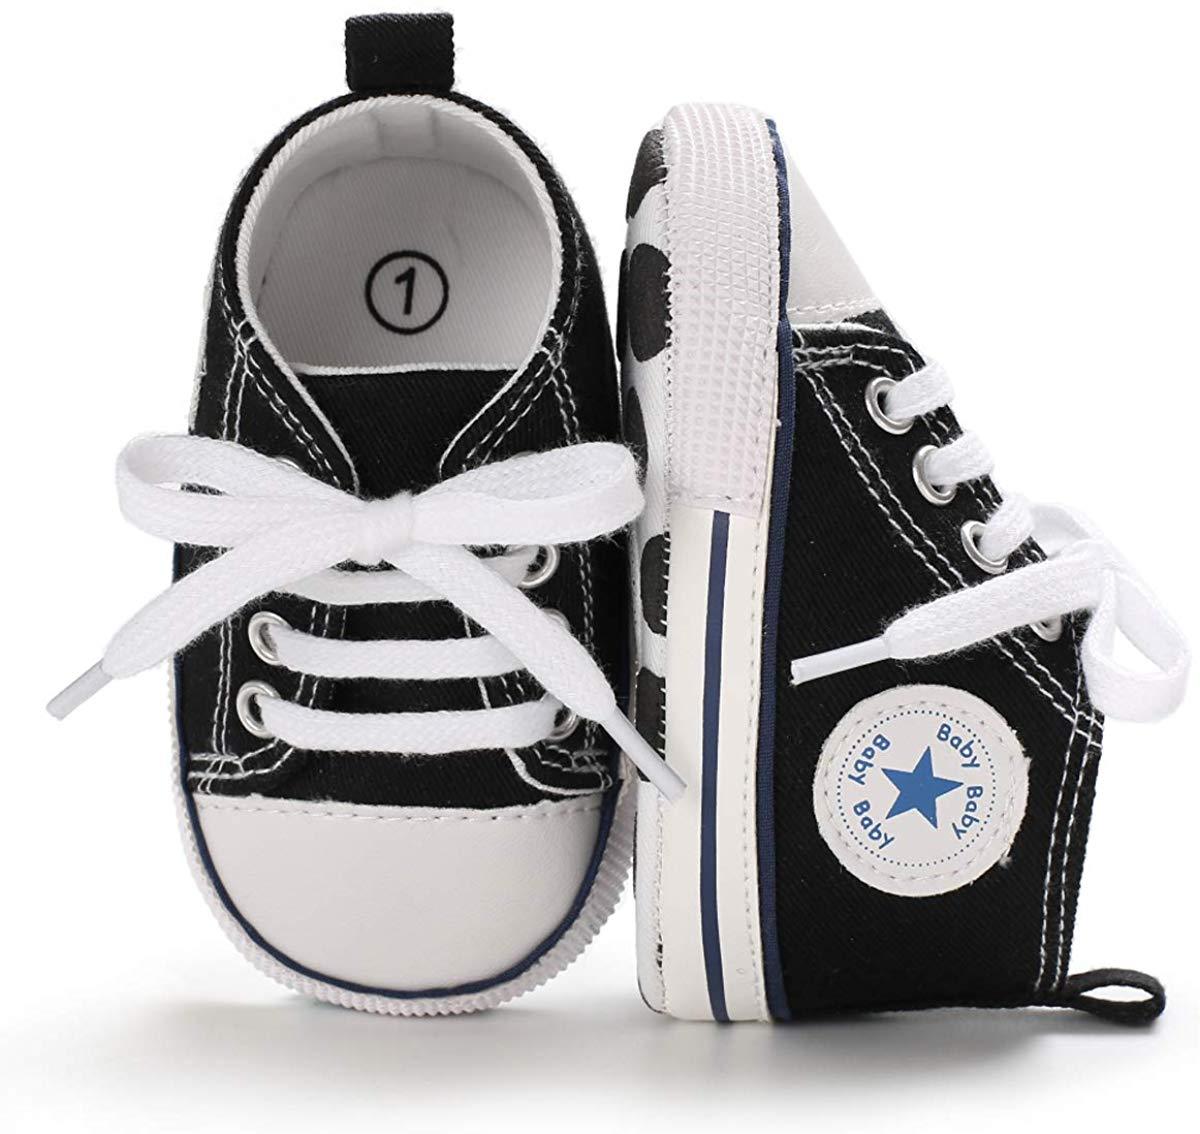 Baskets montantes étoiles pour bébés garçons et filles, chaussures en jean souples antidérapantes pour premiers pas